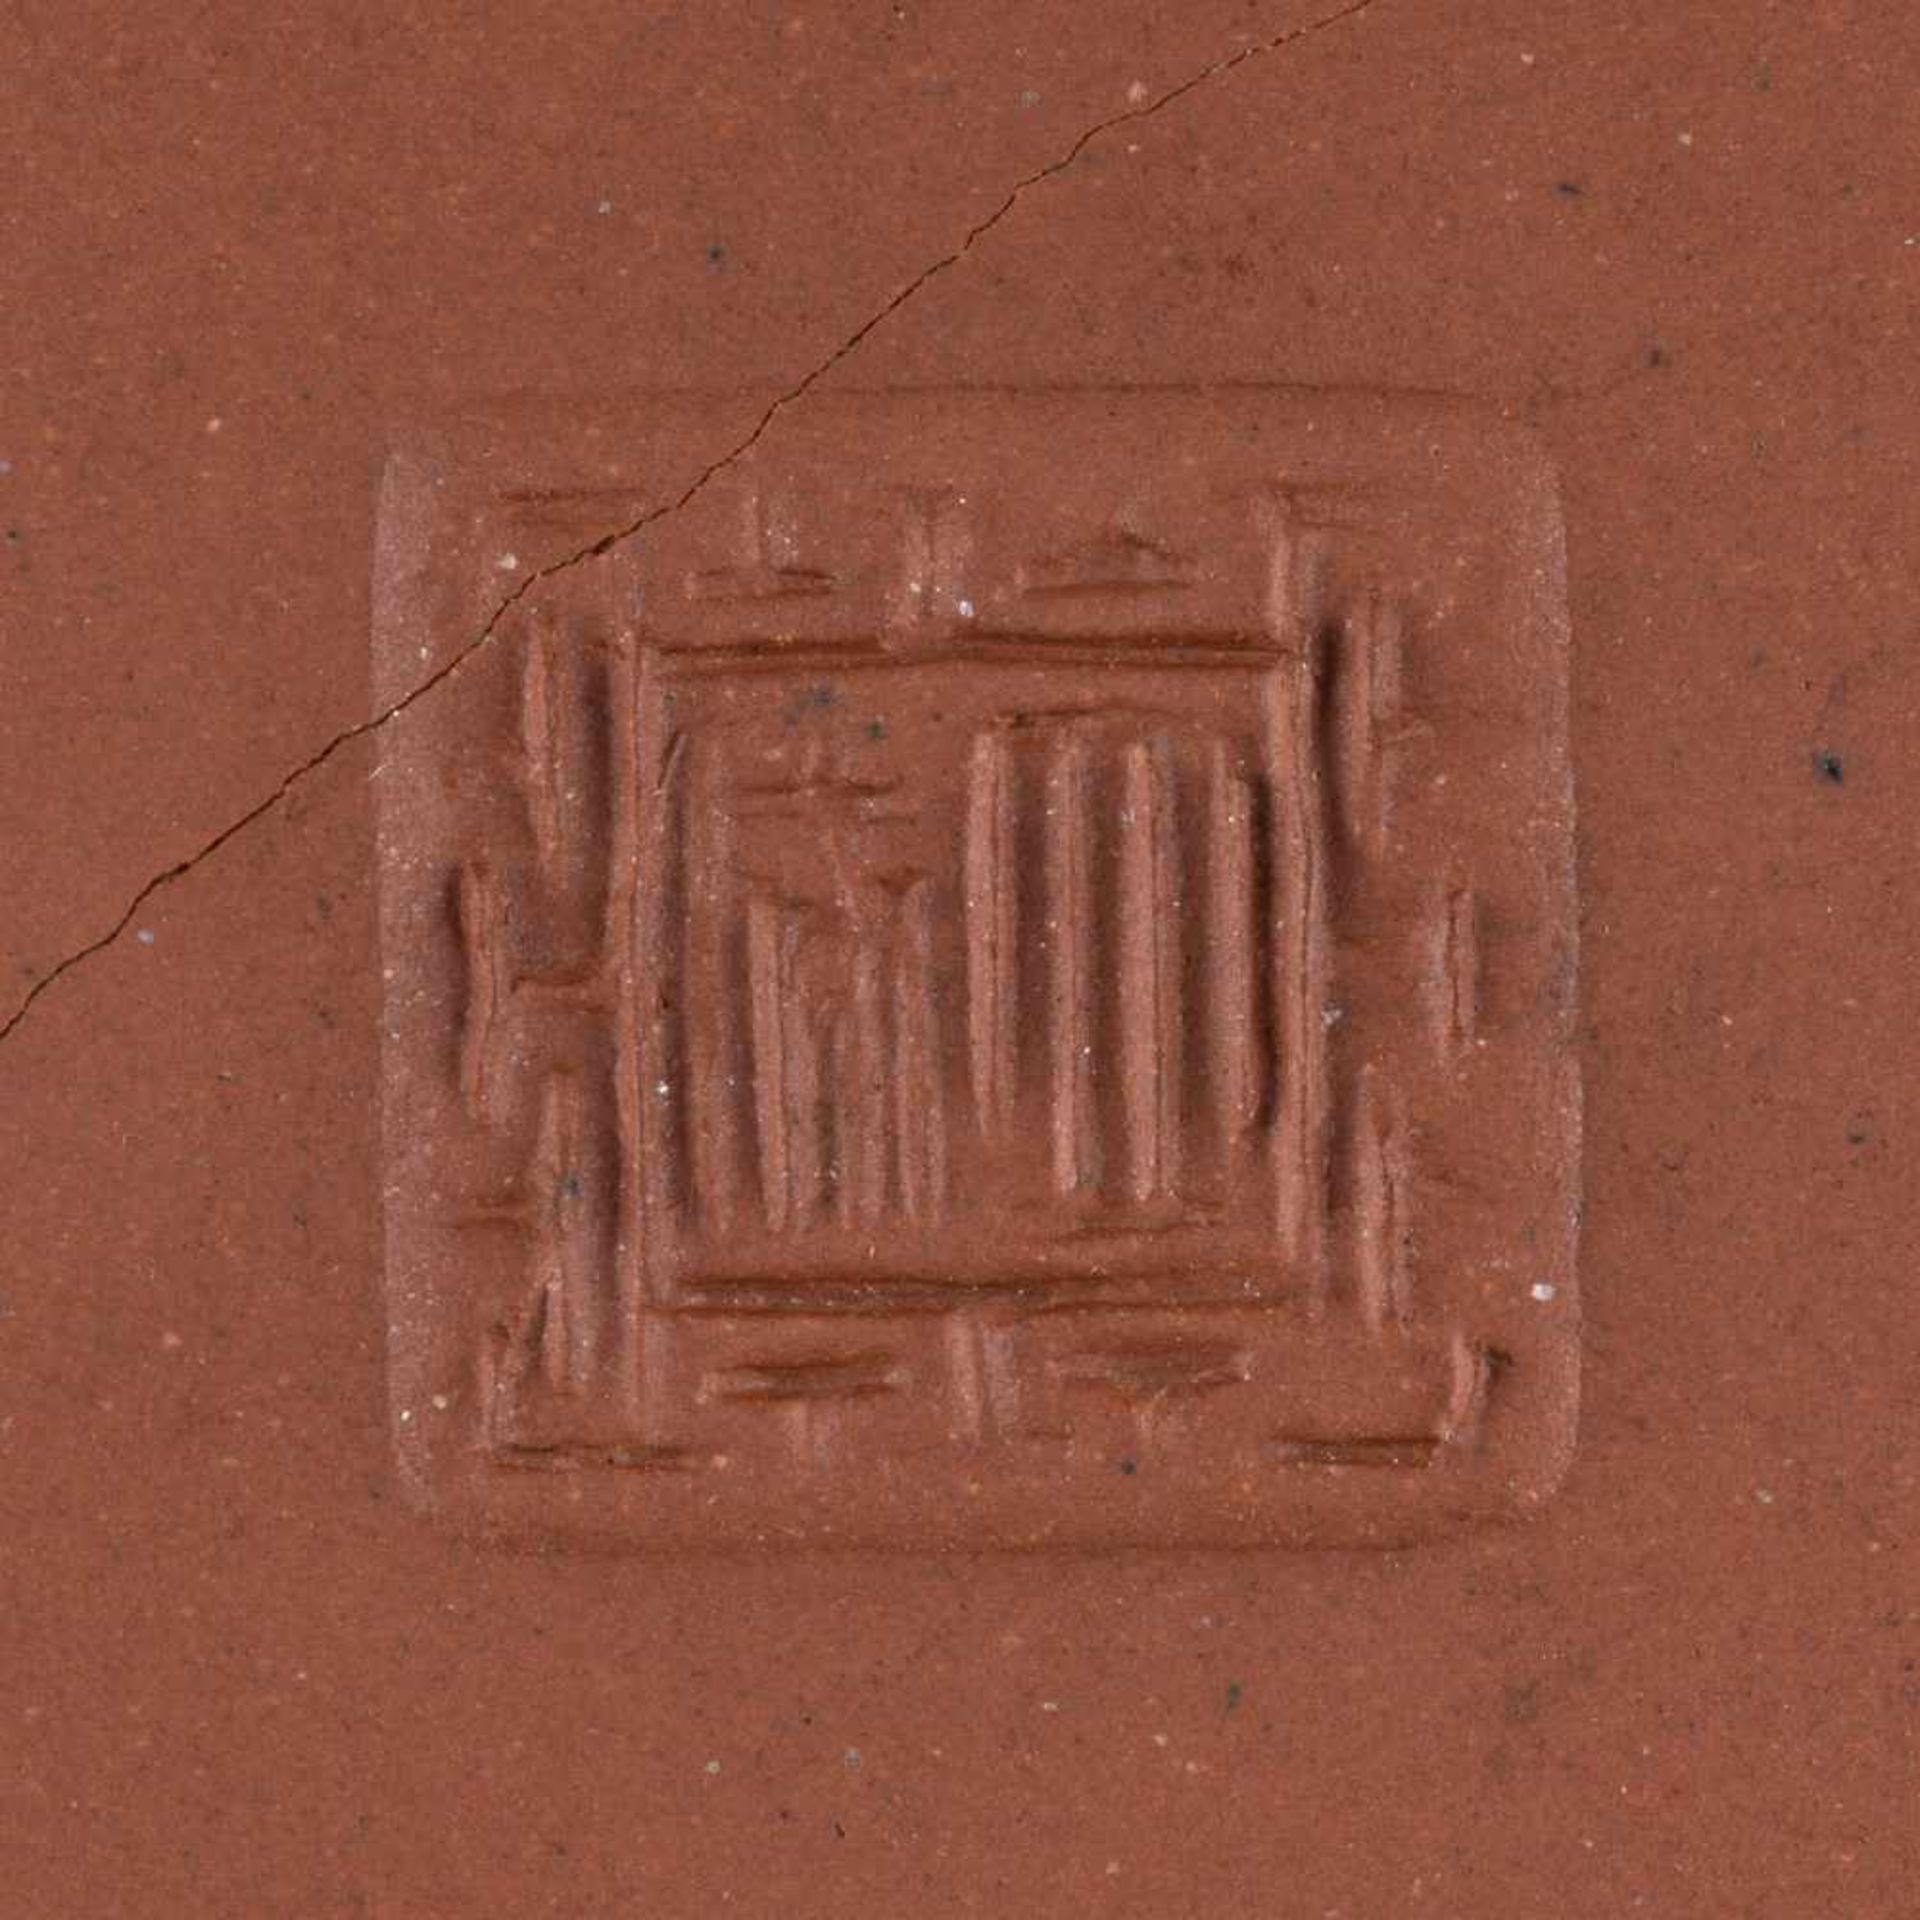 ZWEI ZISHA-TEEKANNEN China, 20. Jh. Braune Keramik. H. 8,4 cm-9,6 cm. Im Boden gemarkt, eine Kanne - Bild 3 aus 3